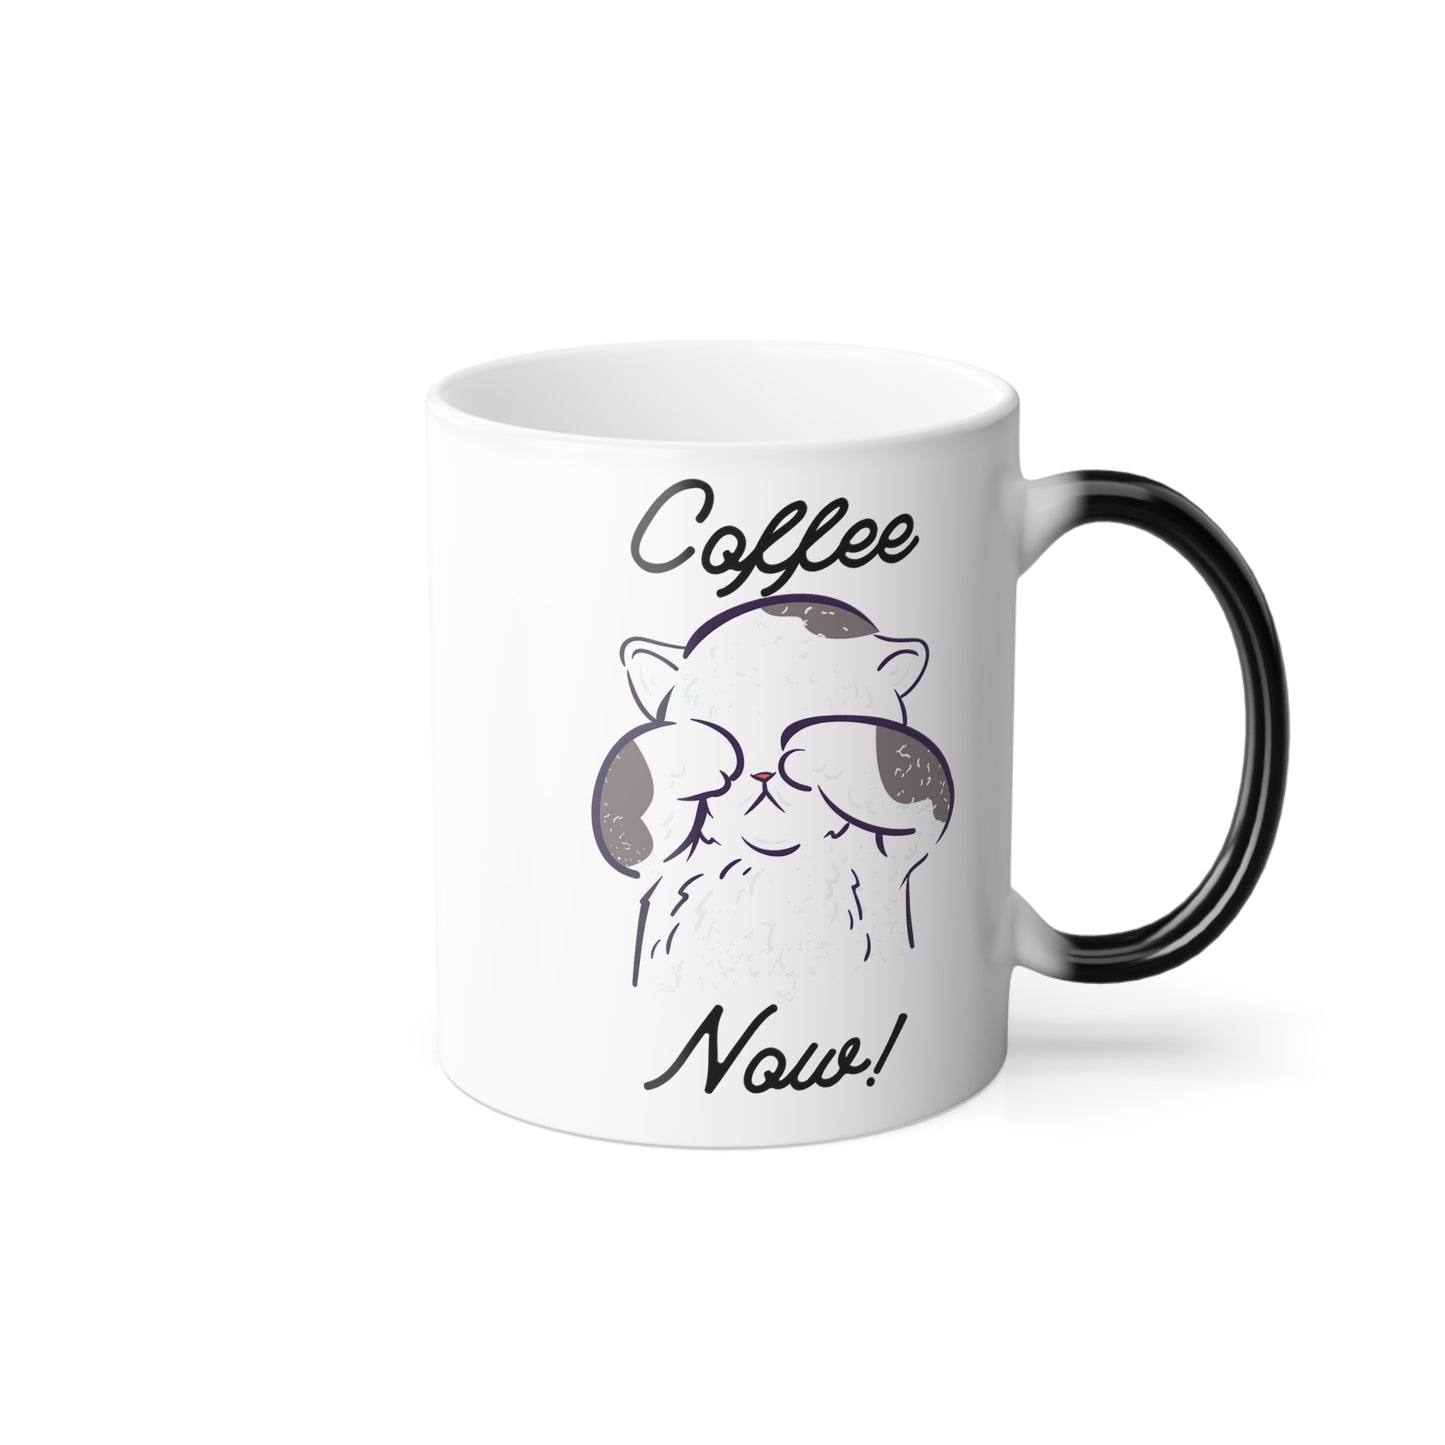 Coffee Now! Color Morphing Mug, 11oz